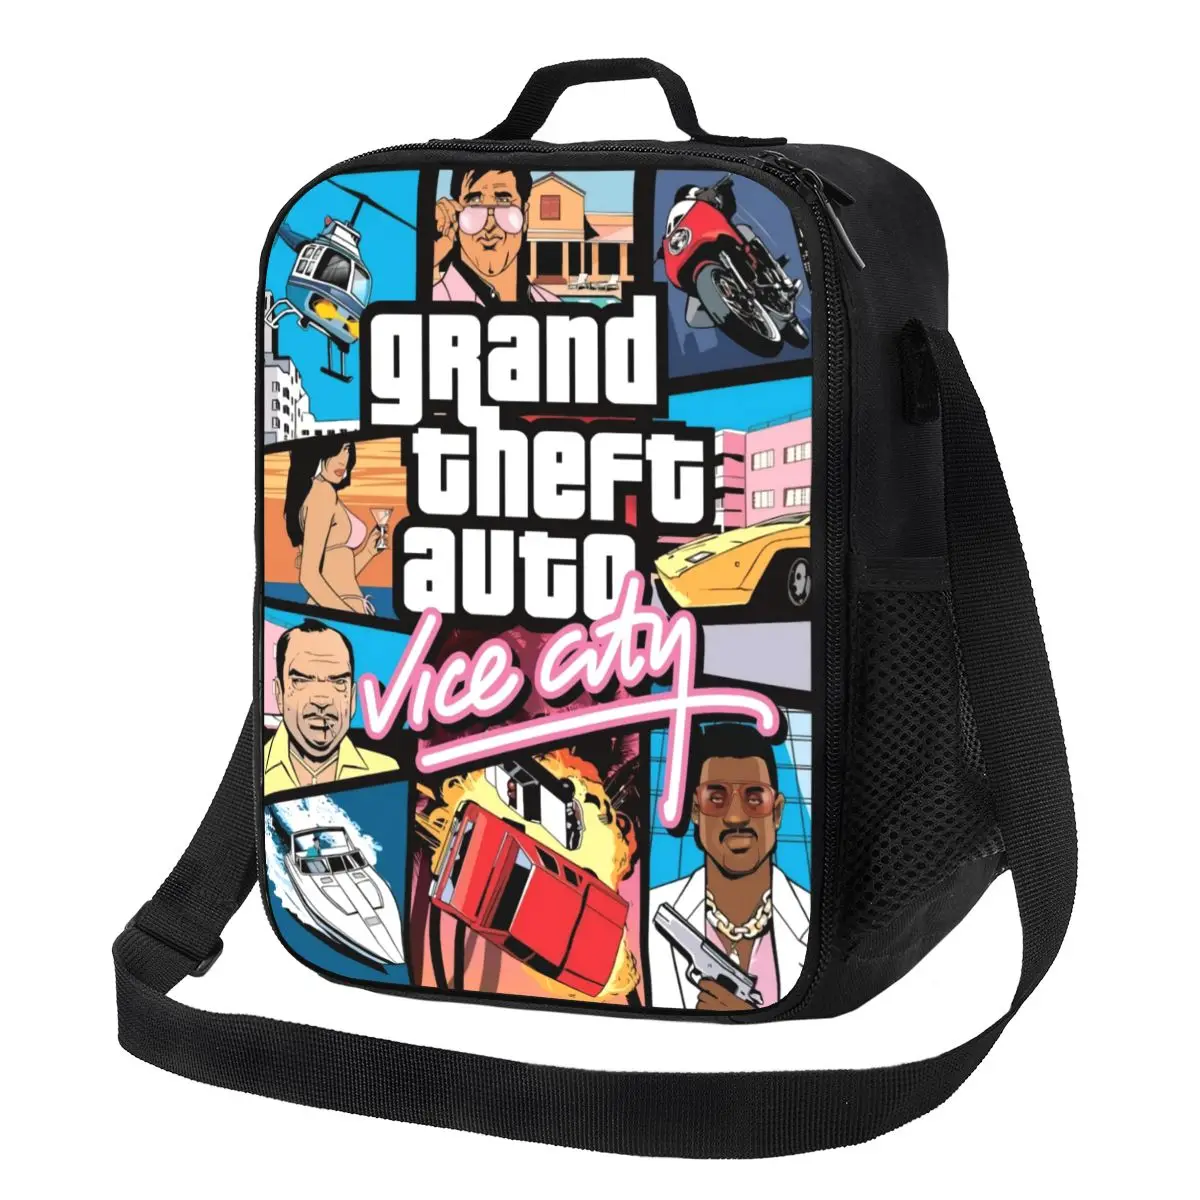 

Приключения Игра Grand Theft Авто коллаж изолированный Ланч-бокс для кемпинга путешествия GTA портативный охладитель термальный Ланч-бокс для женщин детей